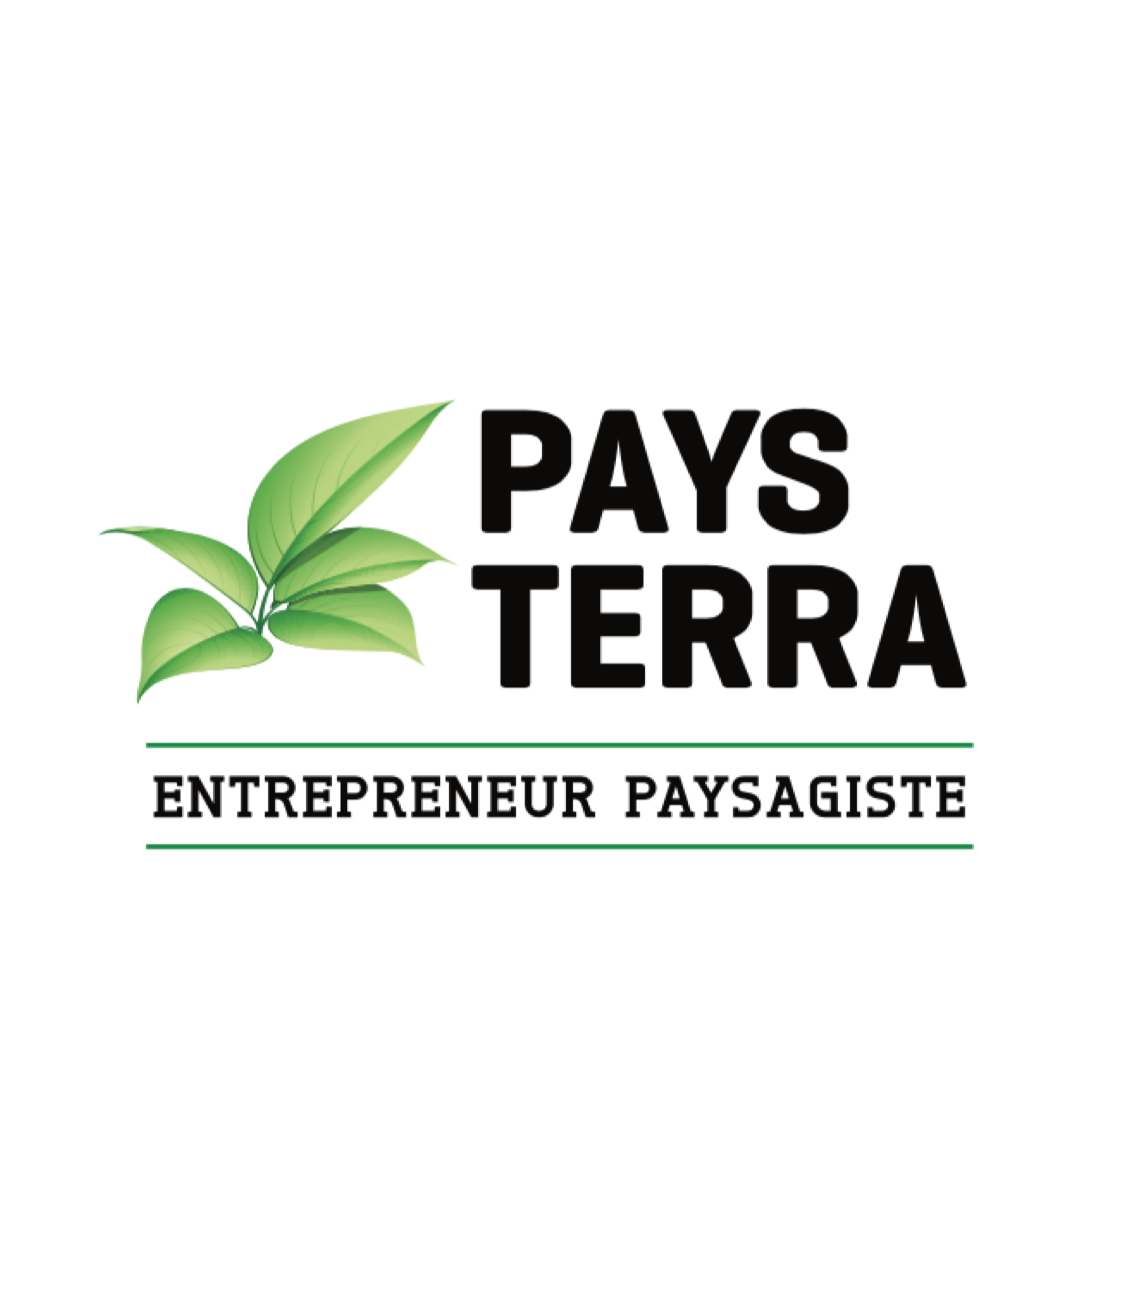 Payterra-Paysagement-KIKDESIGN.ca-Branding-Web-Media-Agence-Web-Jean-Francois-Simard-SEO-Graphisme-Logo-Pub-Imprimerie-Infolettre-Création-Montages-Vidéo-Audio-3D-Gestion-médias-sociaux-Site-Page-Web-Internet